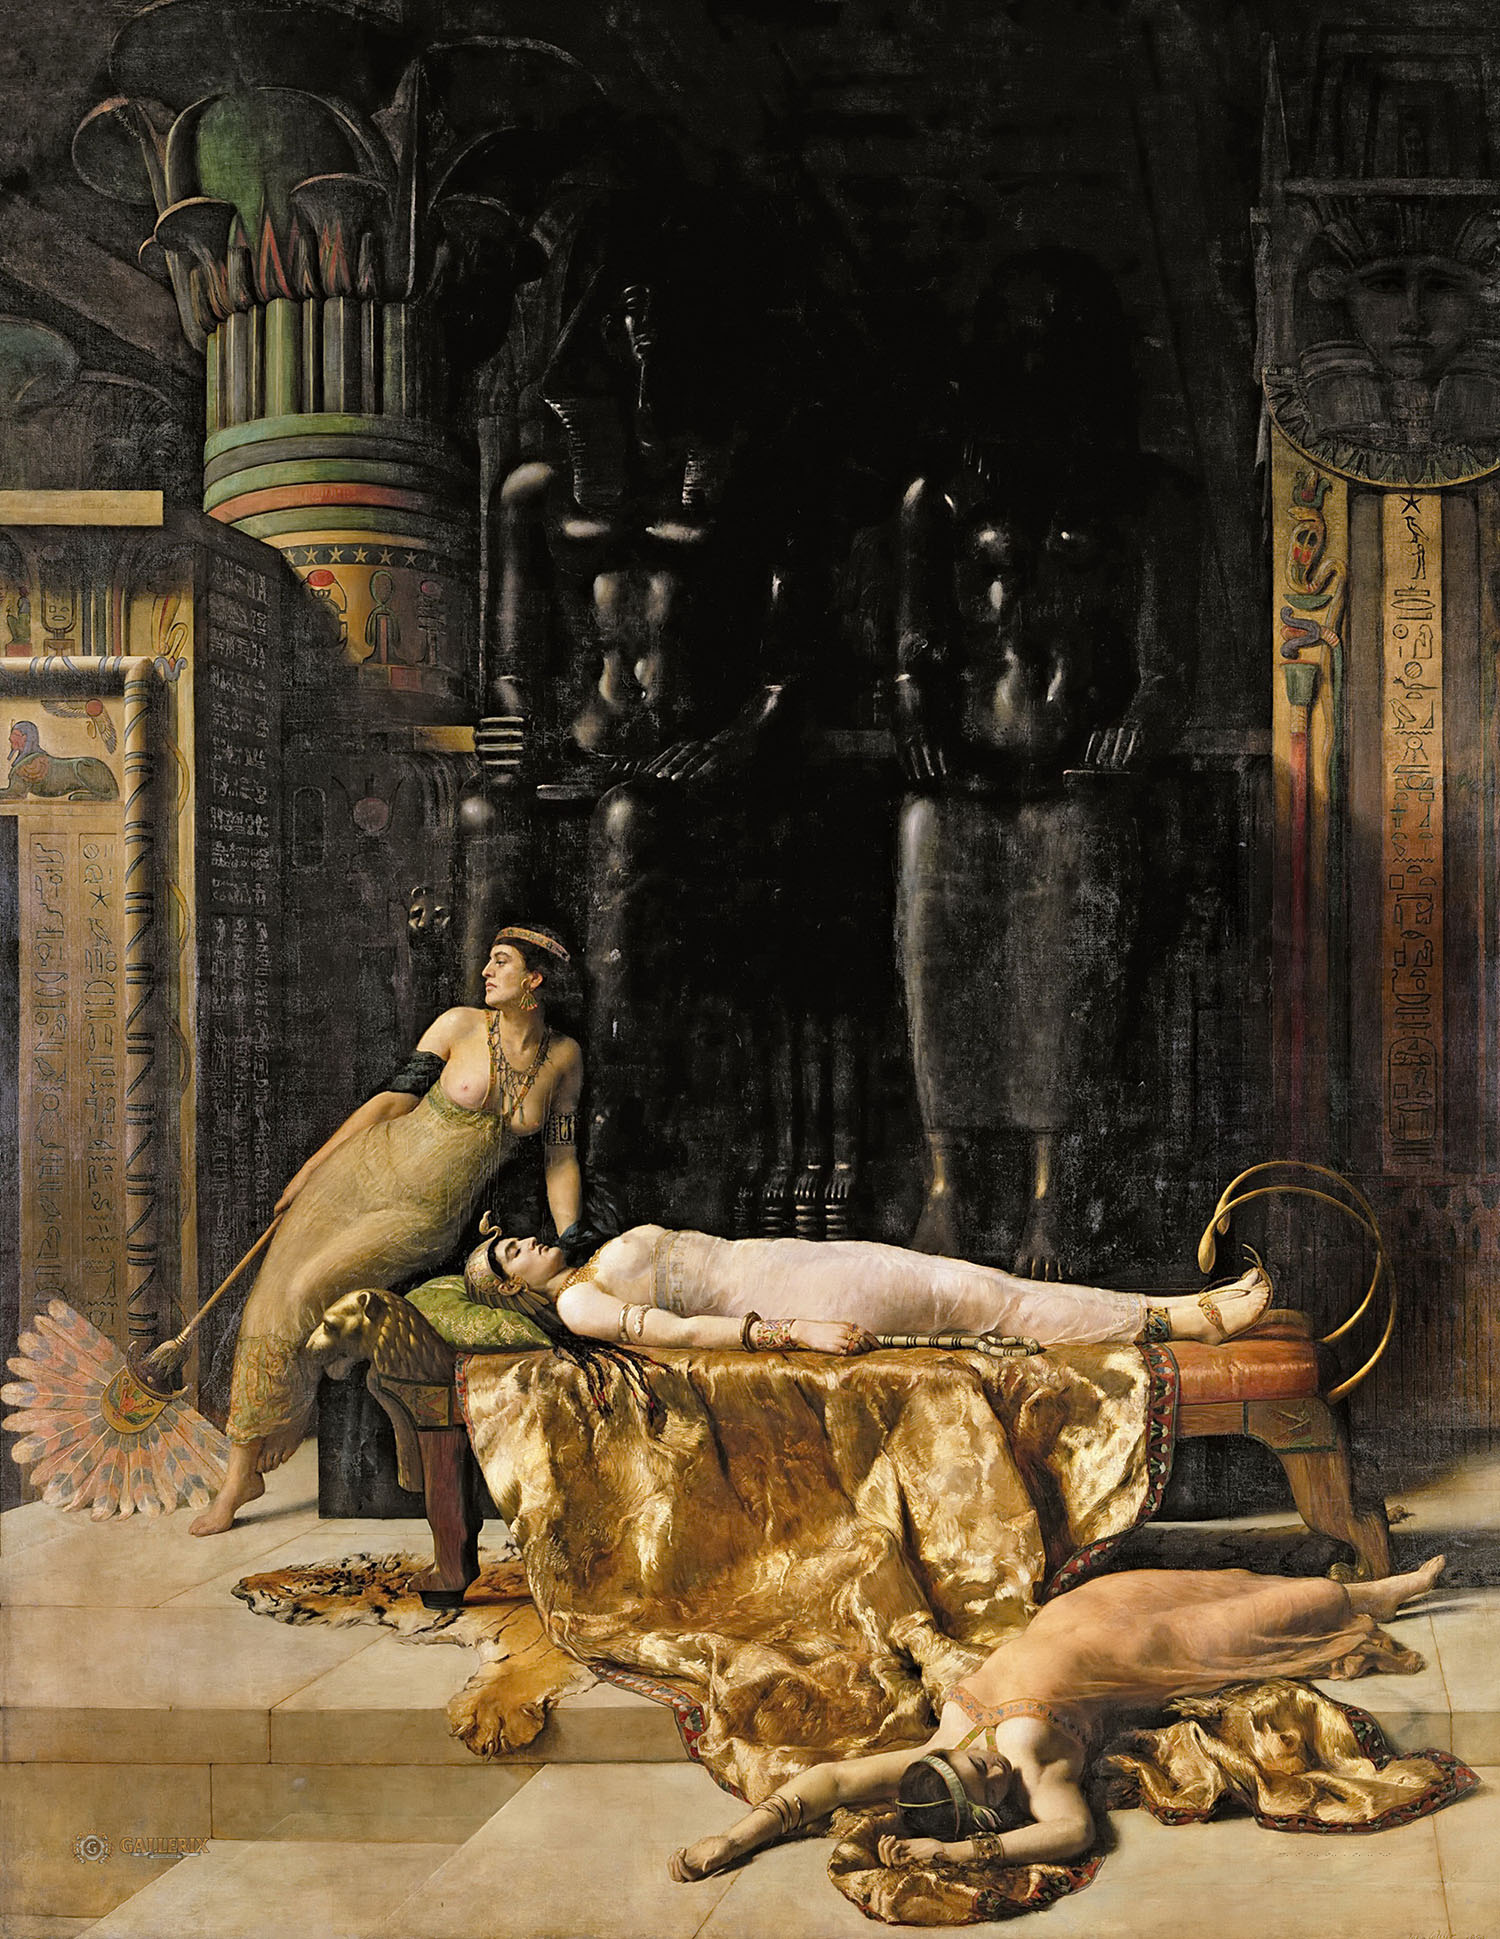 Джон Кольер. "Смерть Клеопатры". 1890. Галерея Олдем, Олдем.